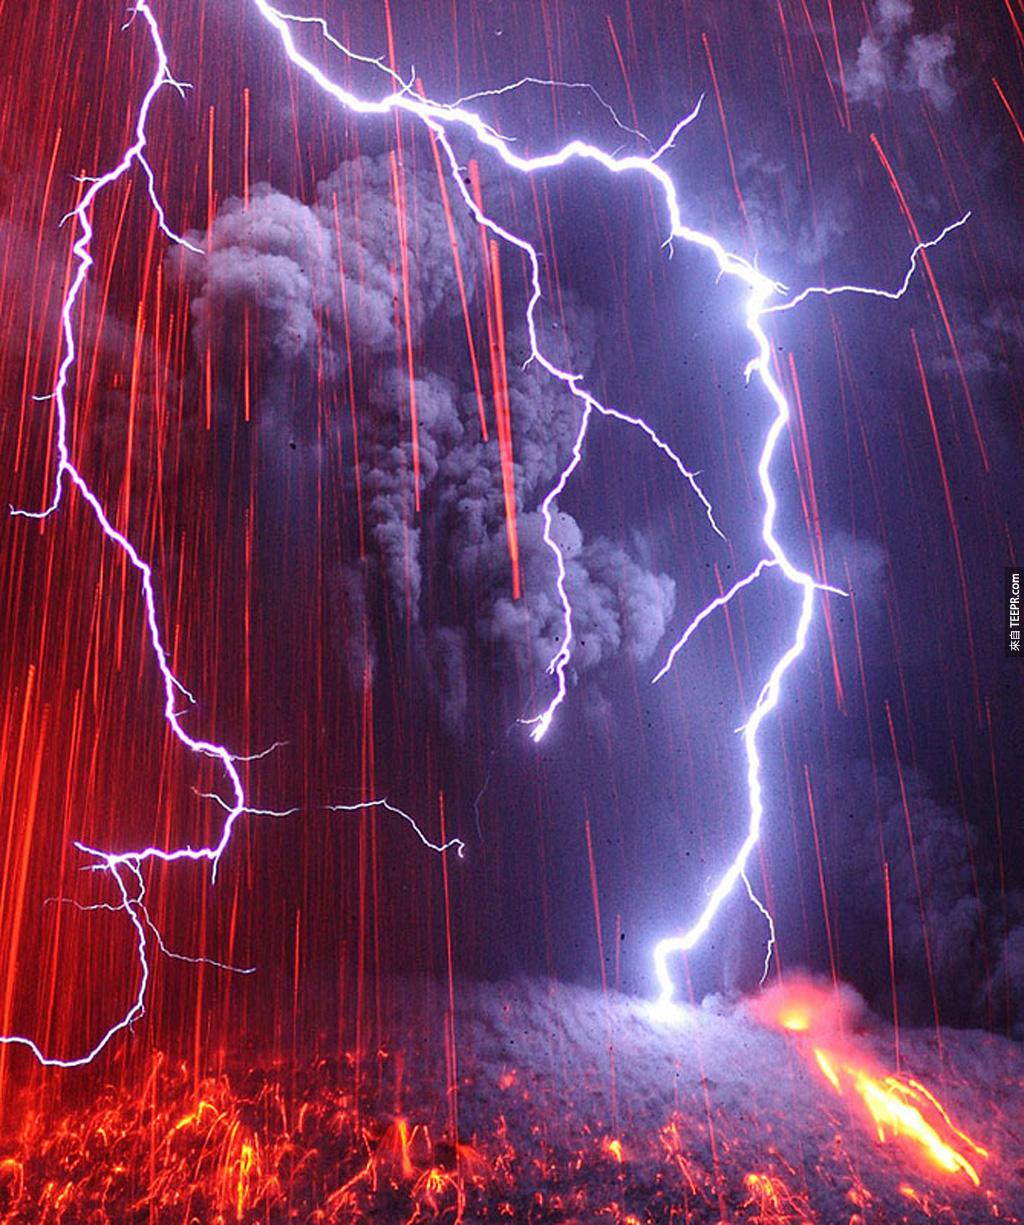 最恐怖的組合: 火山爆發 + 雷電風暴 (日本九州)。